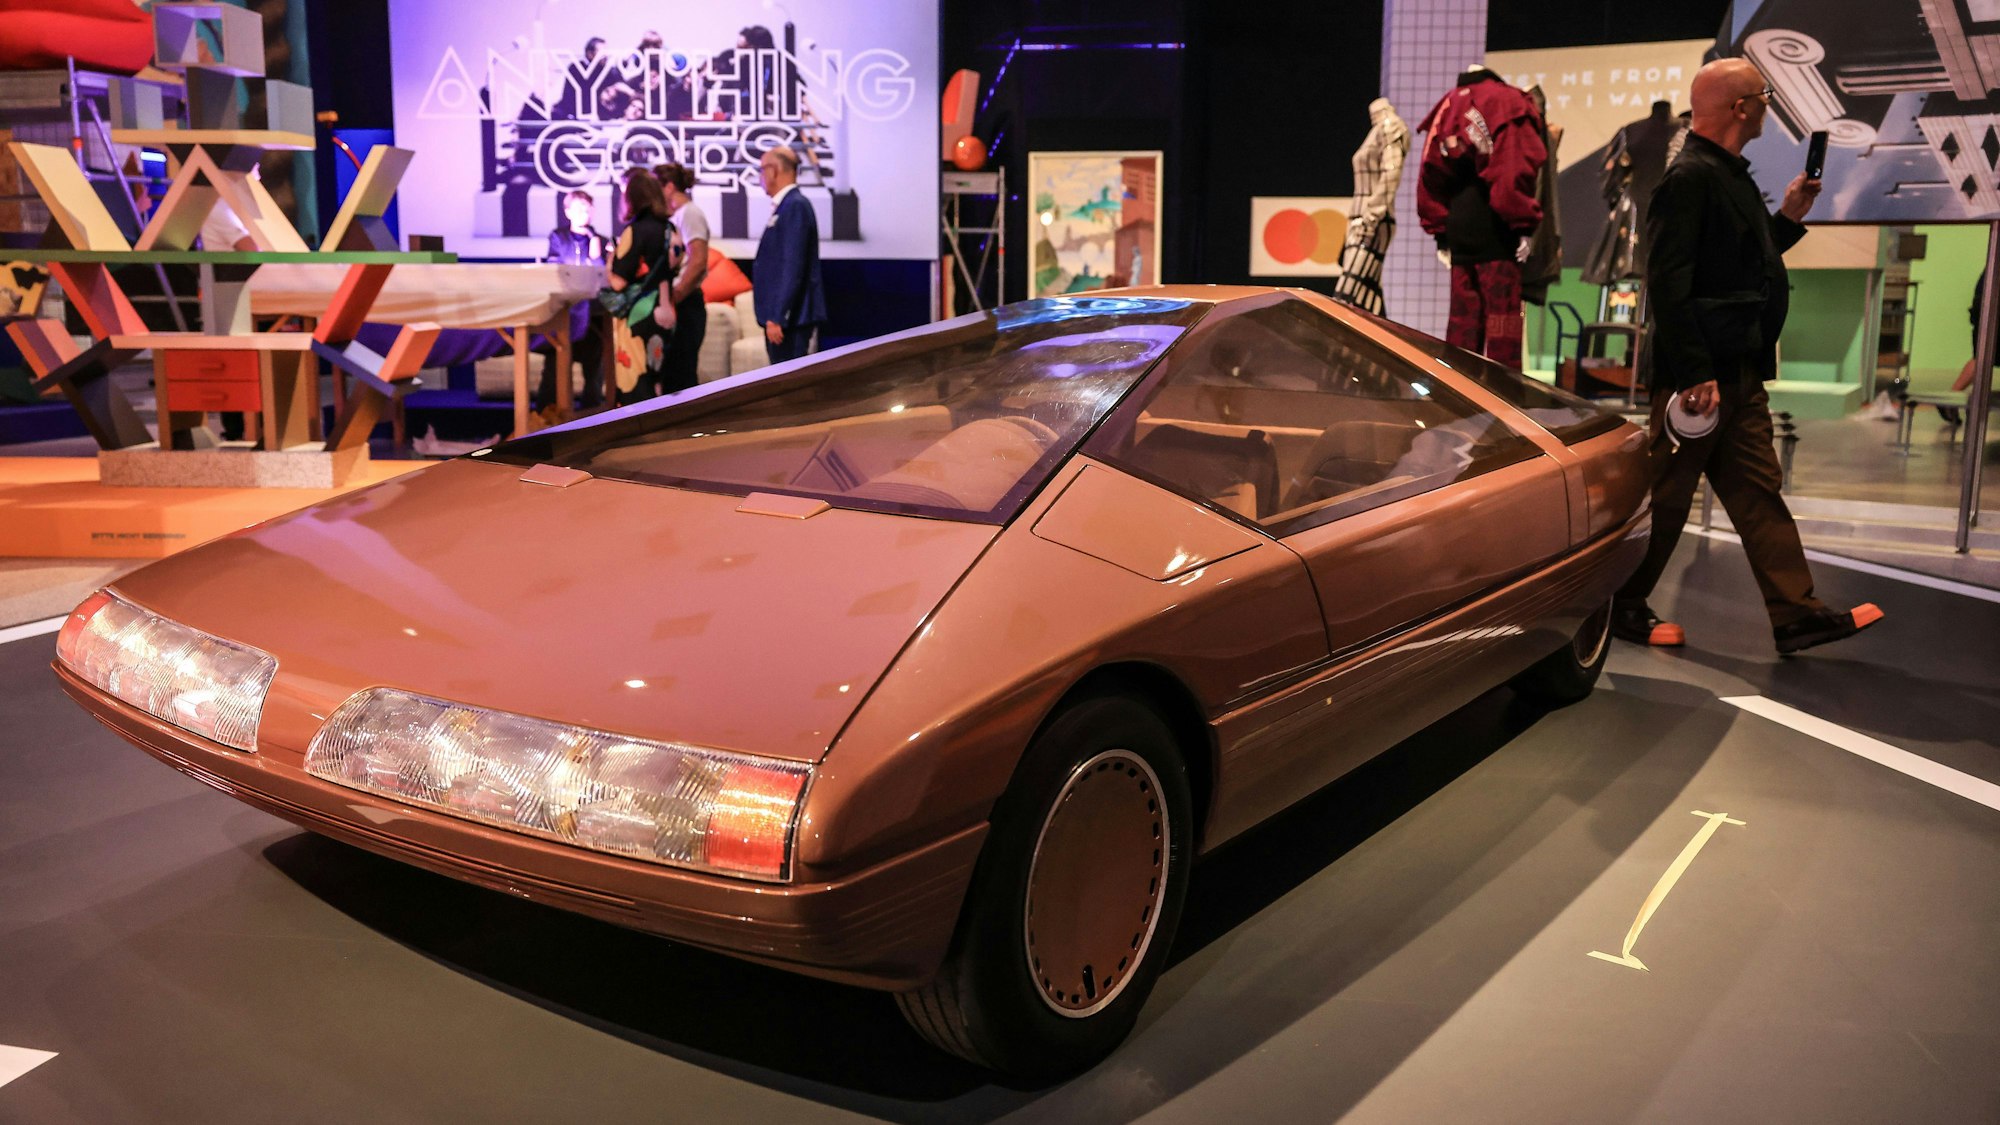 Das Konzeptfahrzeug "Citroen Karin" aus dem Jahr 1980 steht in der Bundeskunsthalle. Es ist rötlich und geometrisch-schnittig. Im Hintergrund weitere bunte Kunstwerke und Besucher.